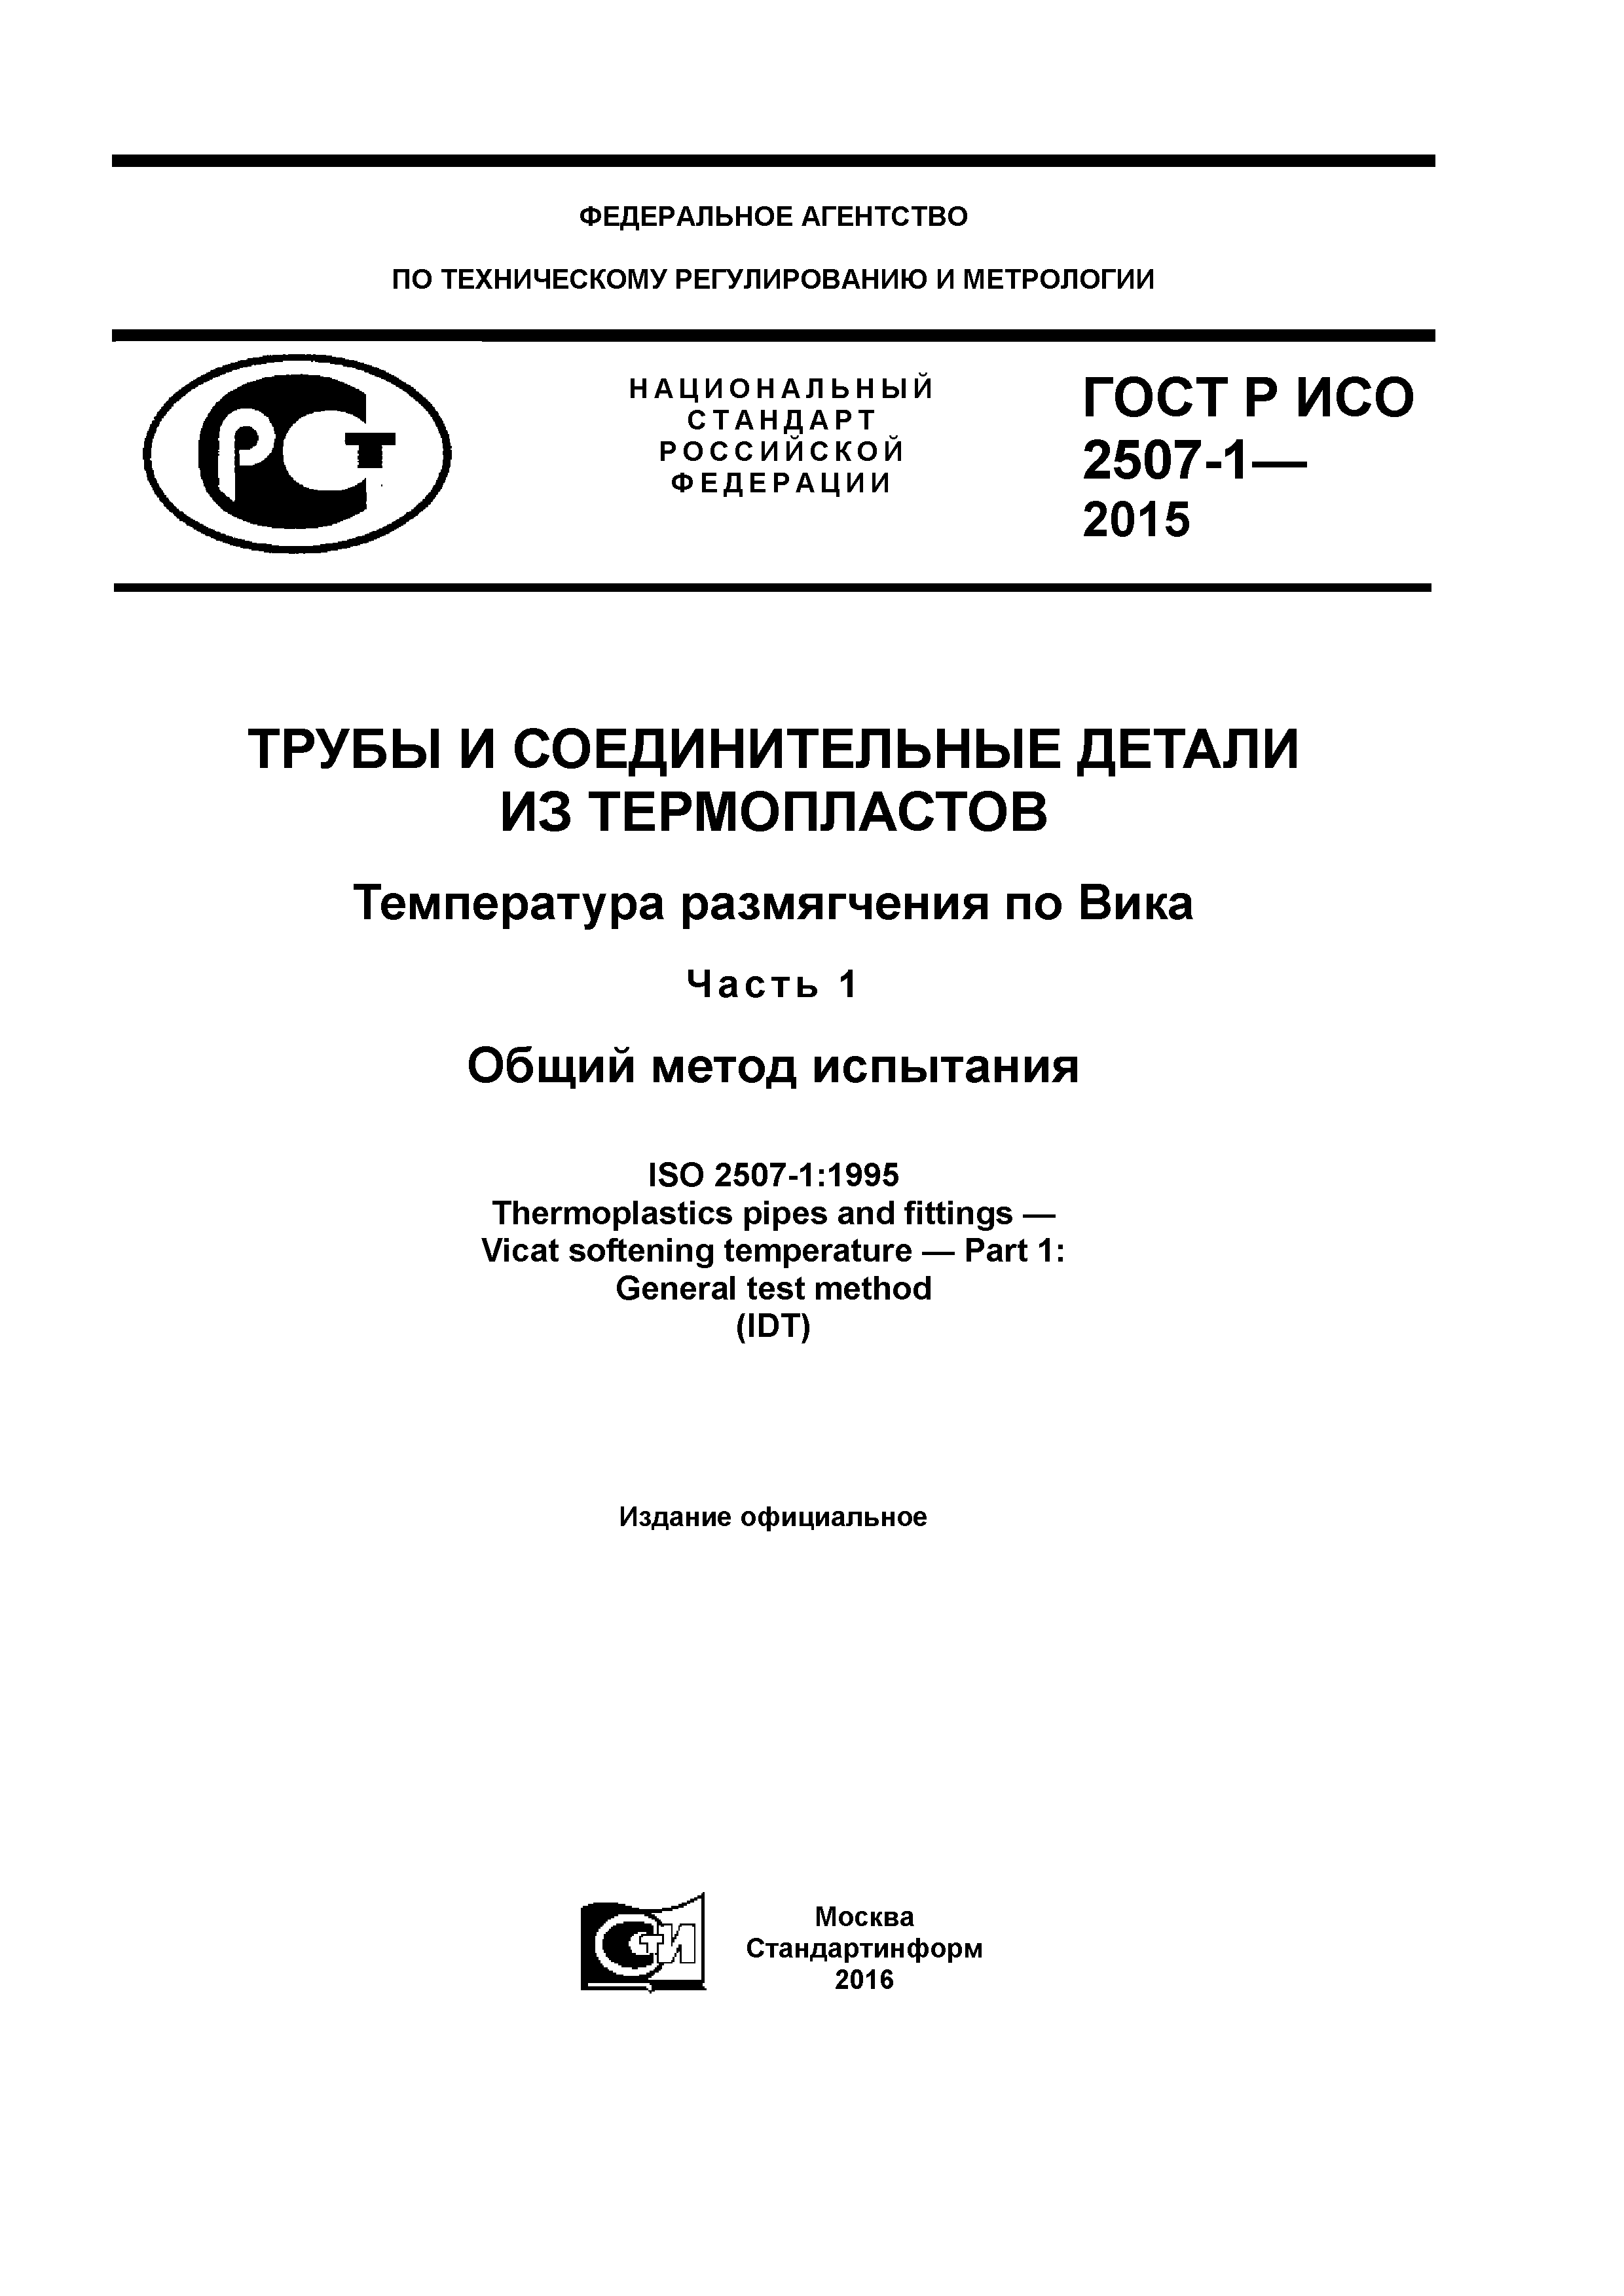 ГОСТ Р ИСО 2507-1-2015